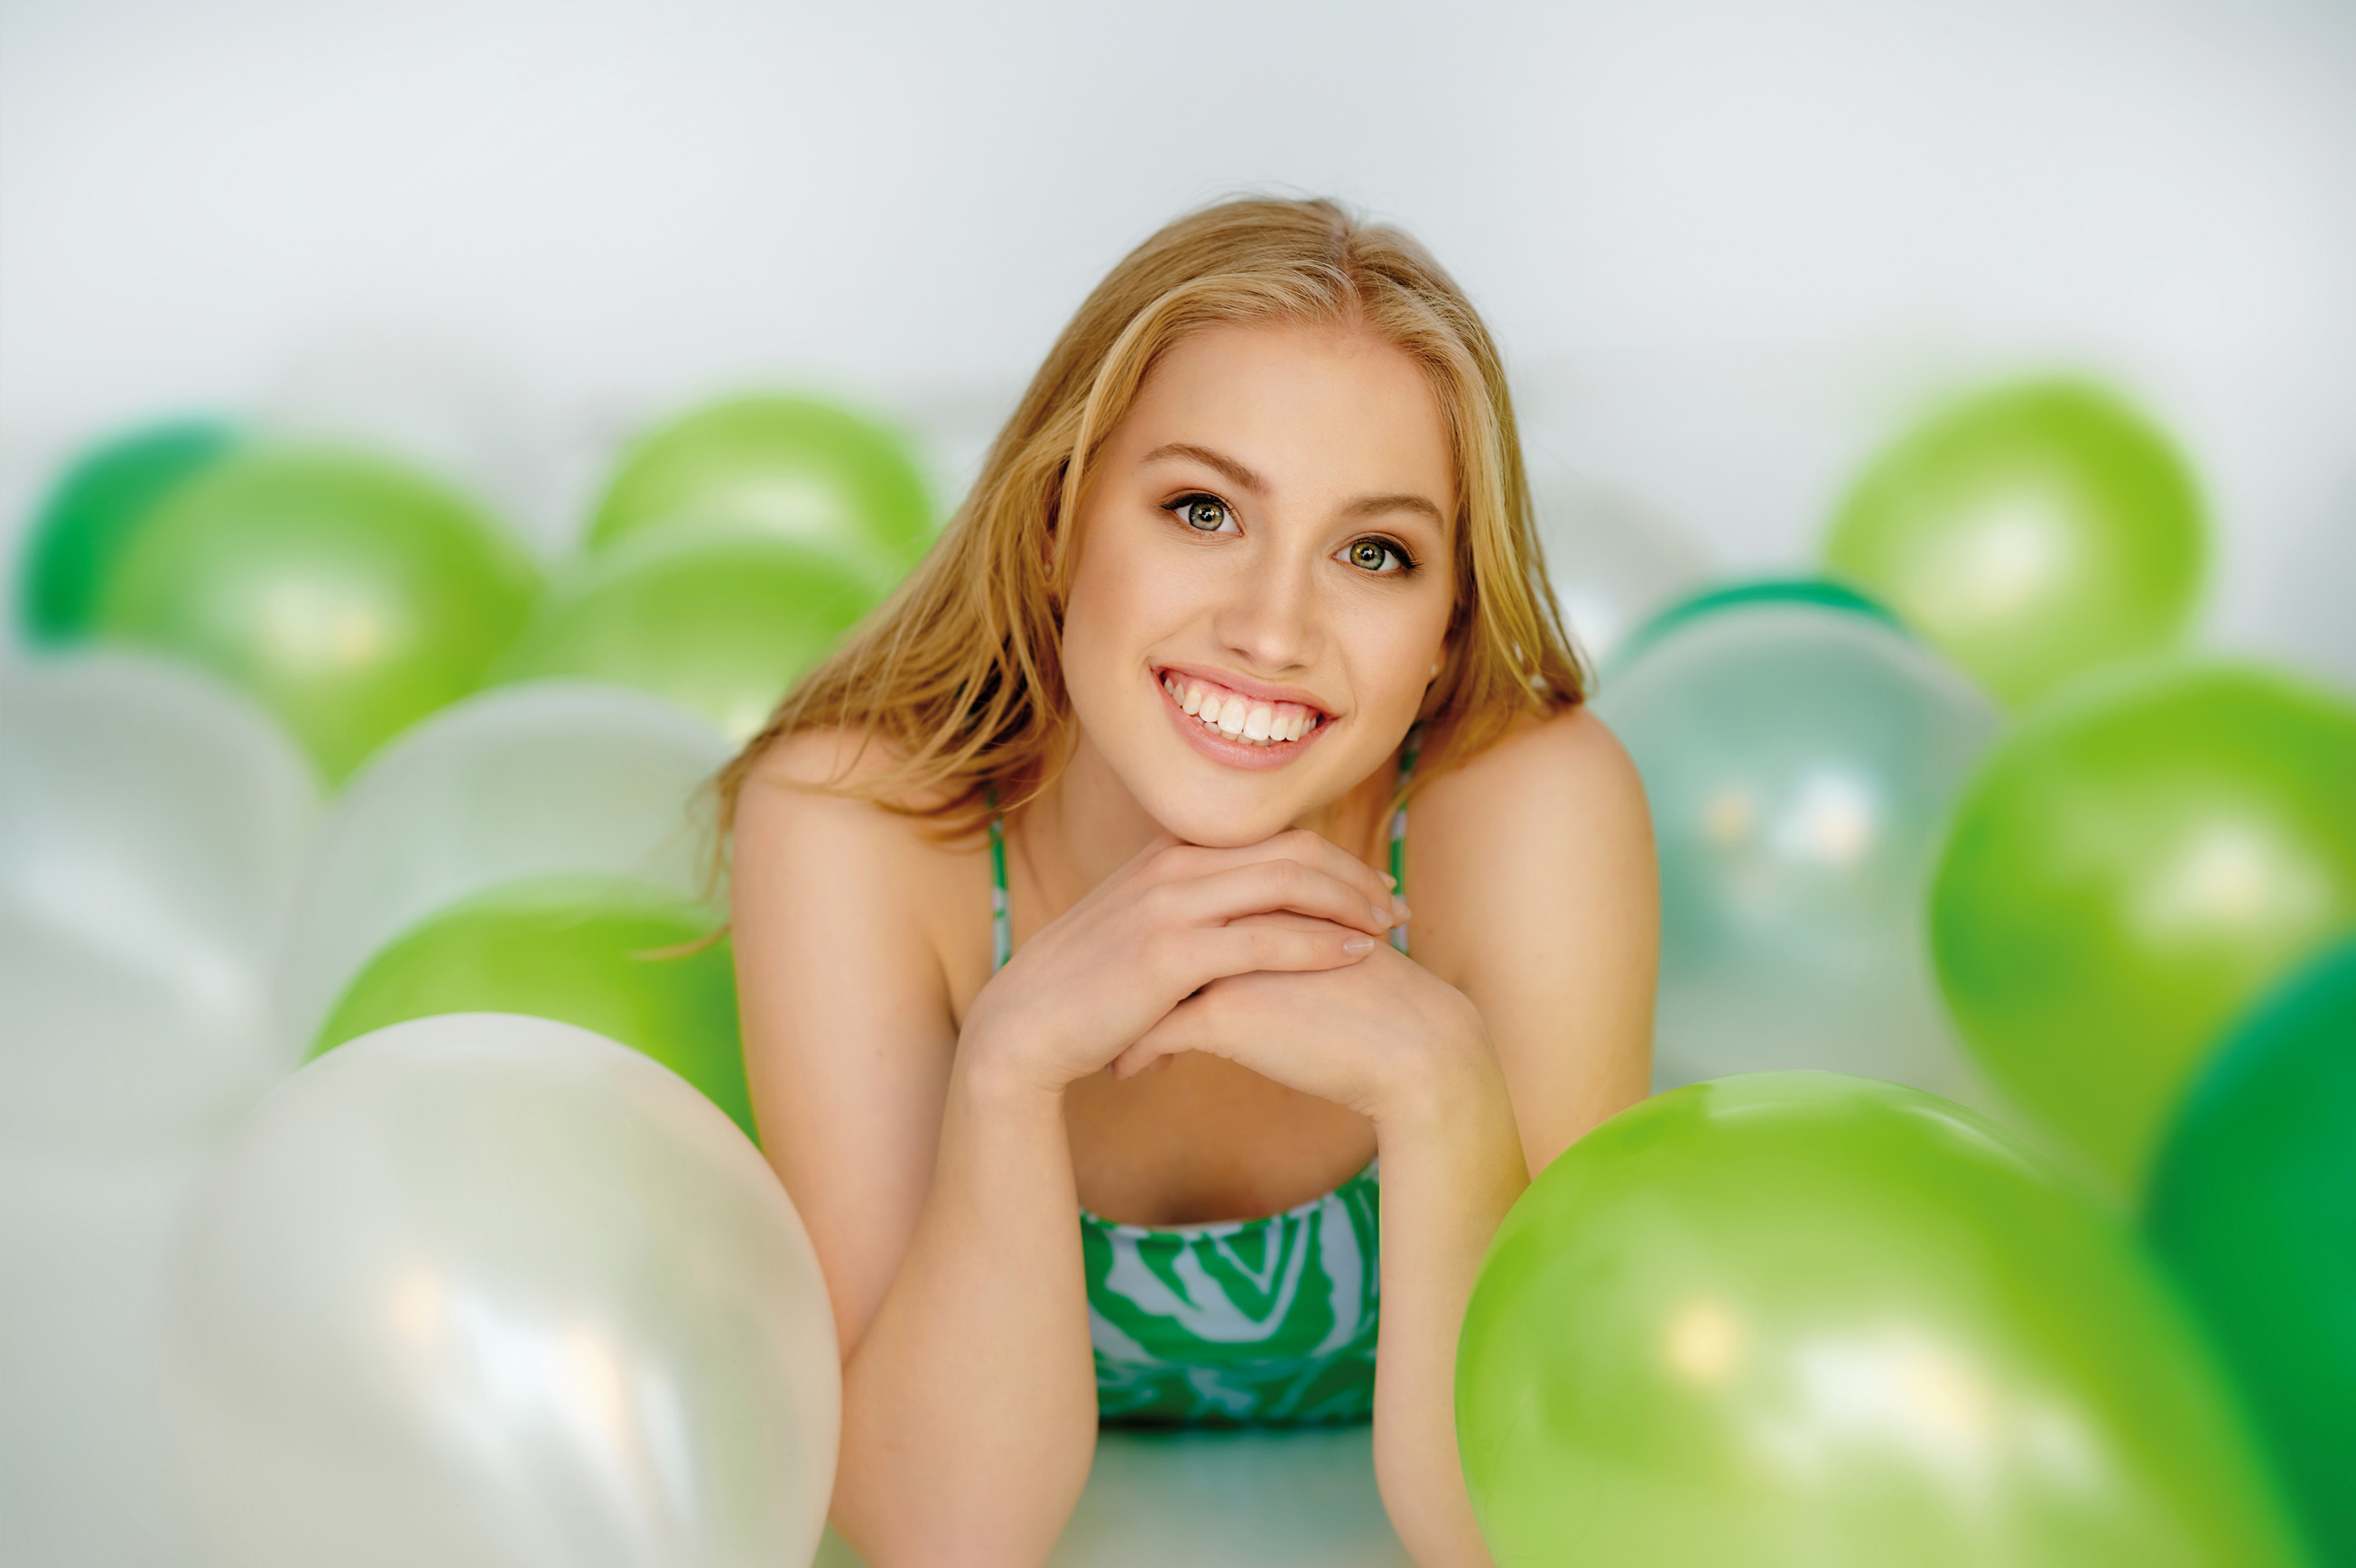 Eine junge Frau liegt auf dem Boden umgeben von weißen und grünen Luftballons.